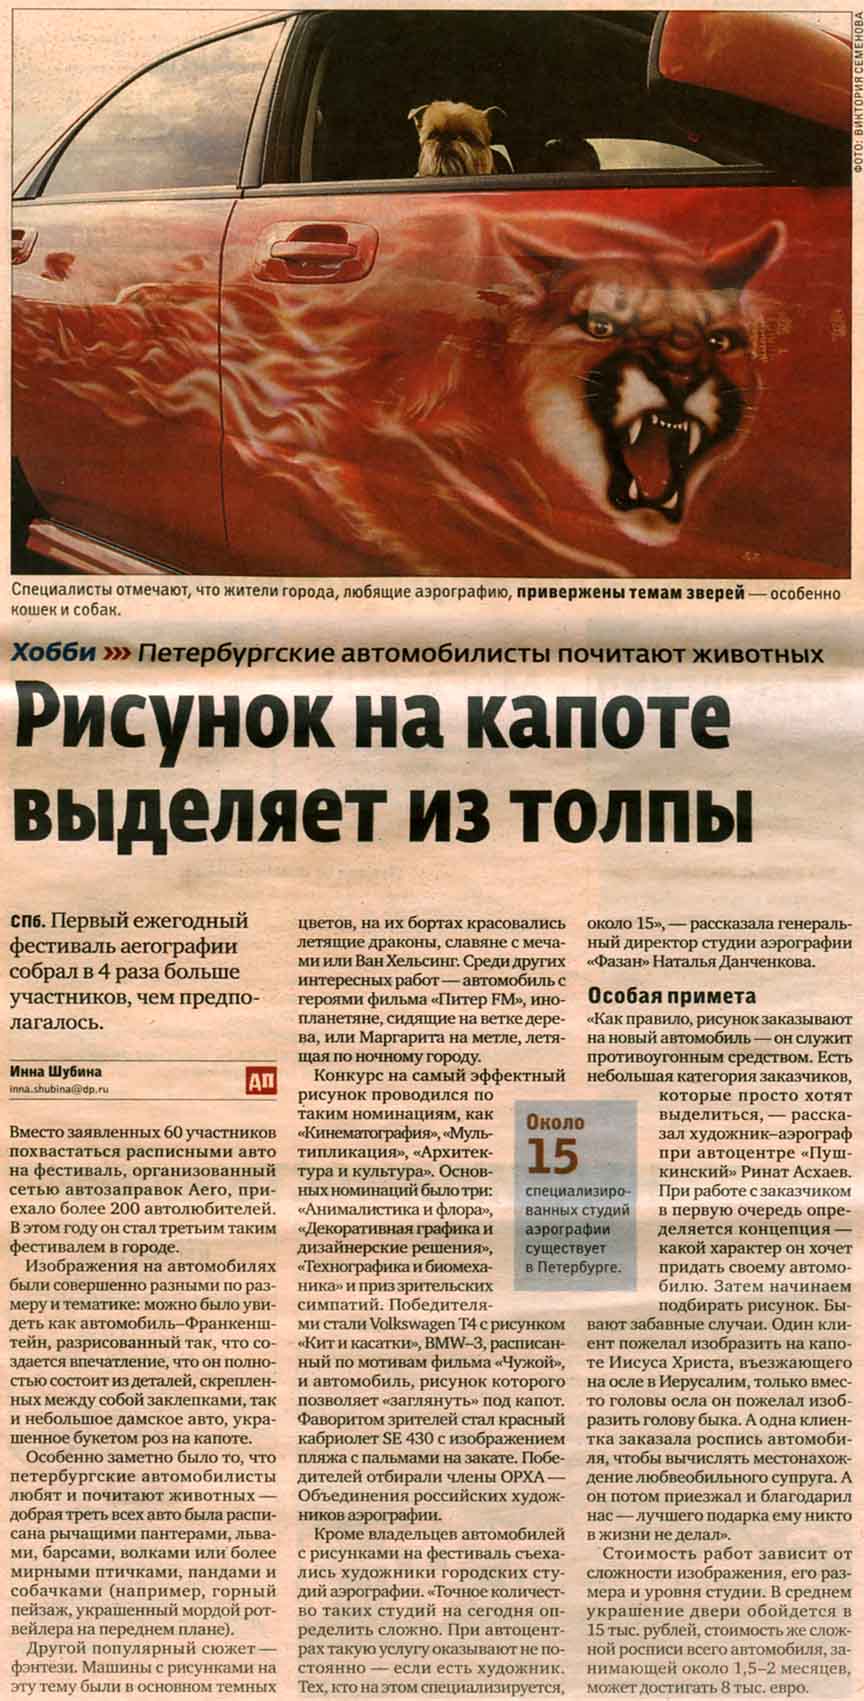 Газета "Деловой Петербург", август